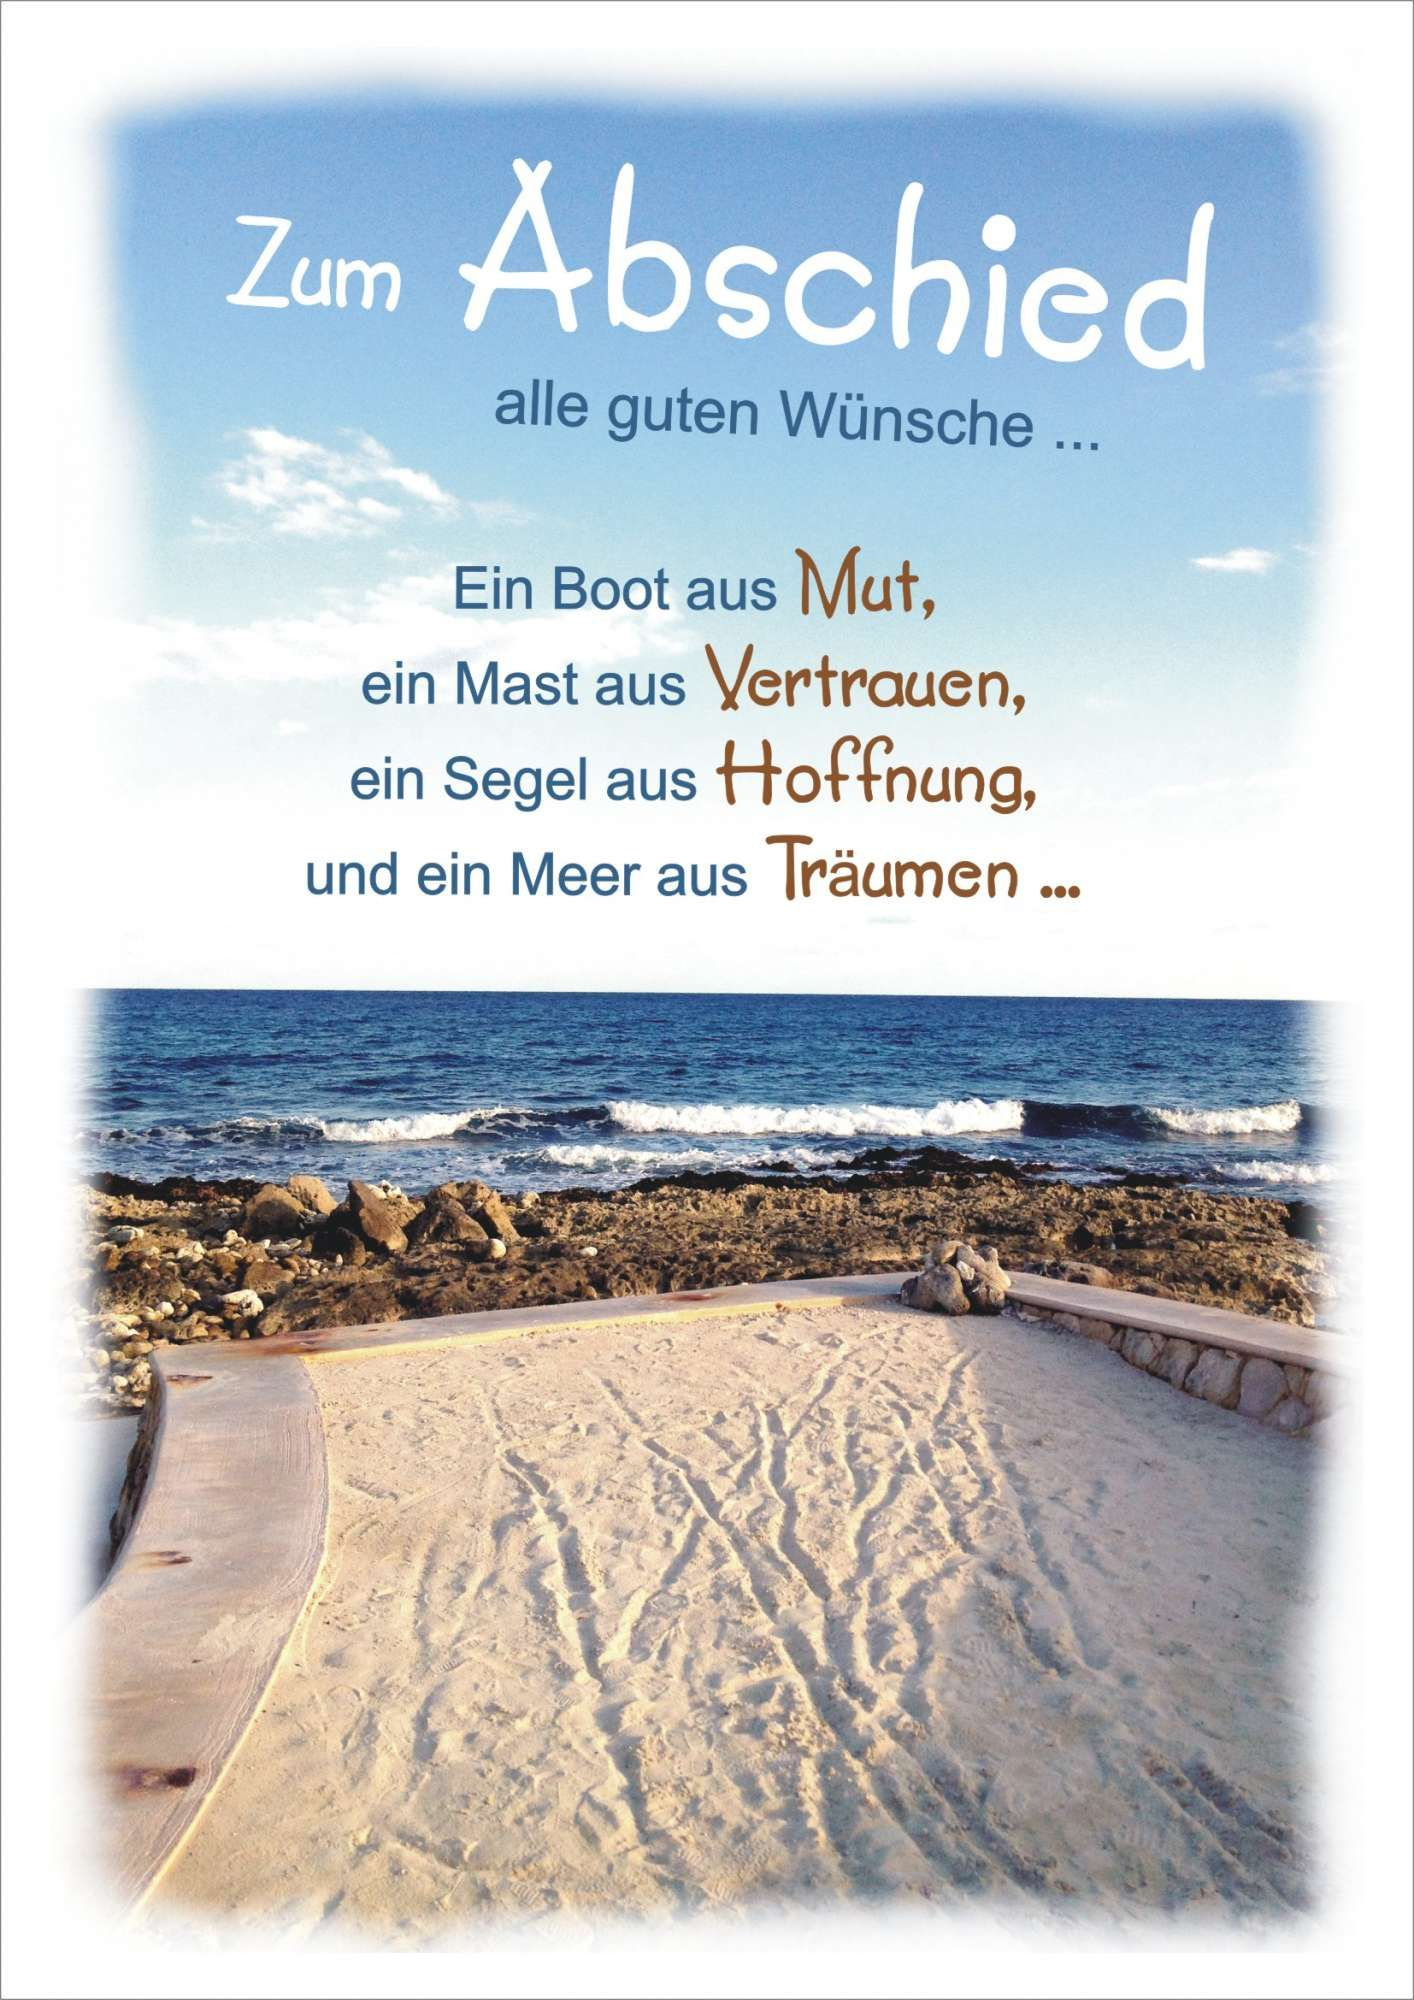 32+ Schoene sprueche fuer lehrer zum abschied , Sprüche Zur Verabschiedung In Den Ruhestand kinderbilder.download kinderbilder.download